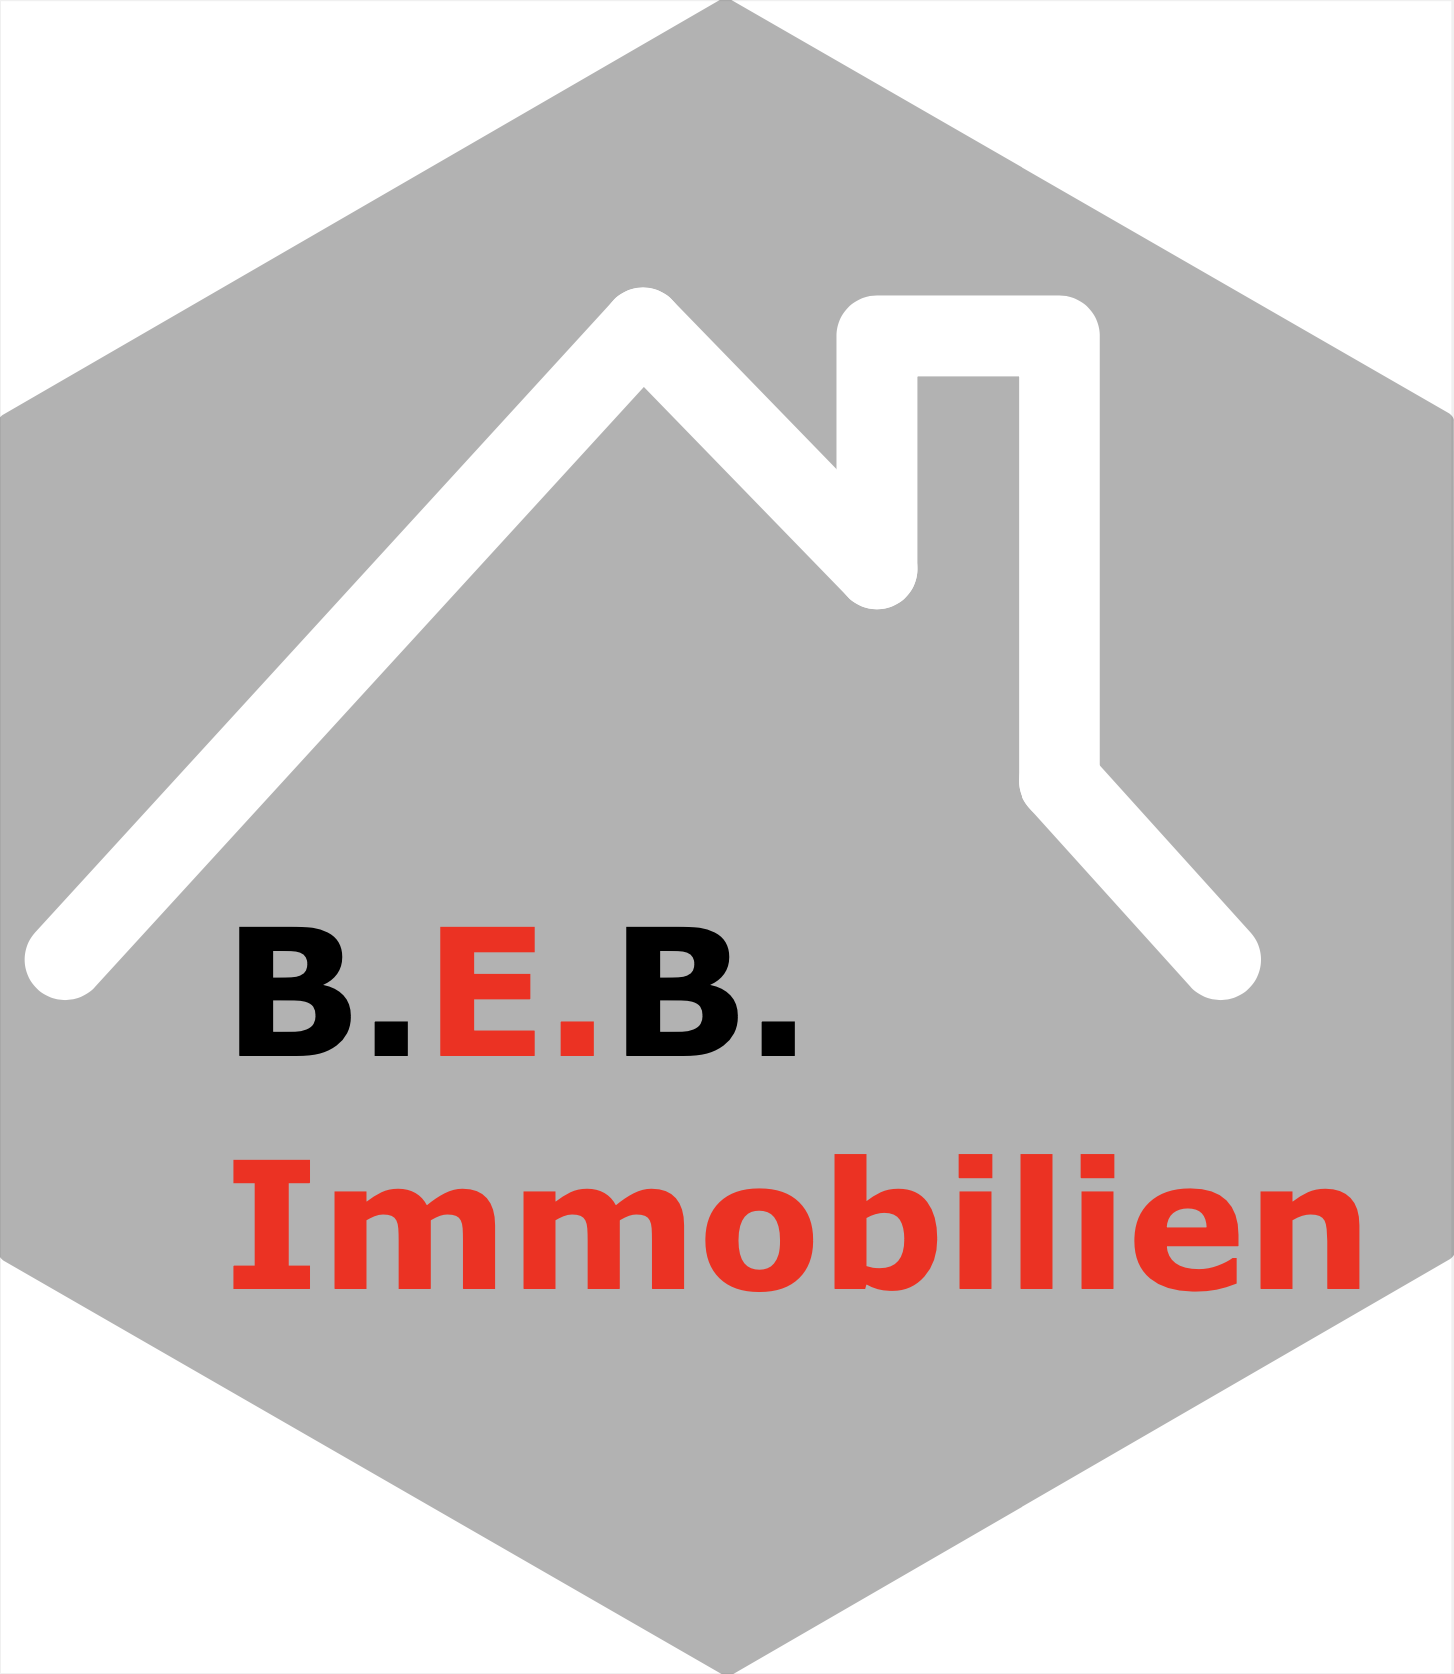 B.E.B. Immobilien UG (haftungsbeschränkt)